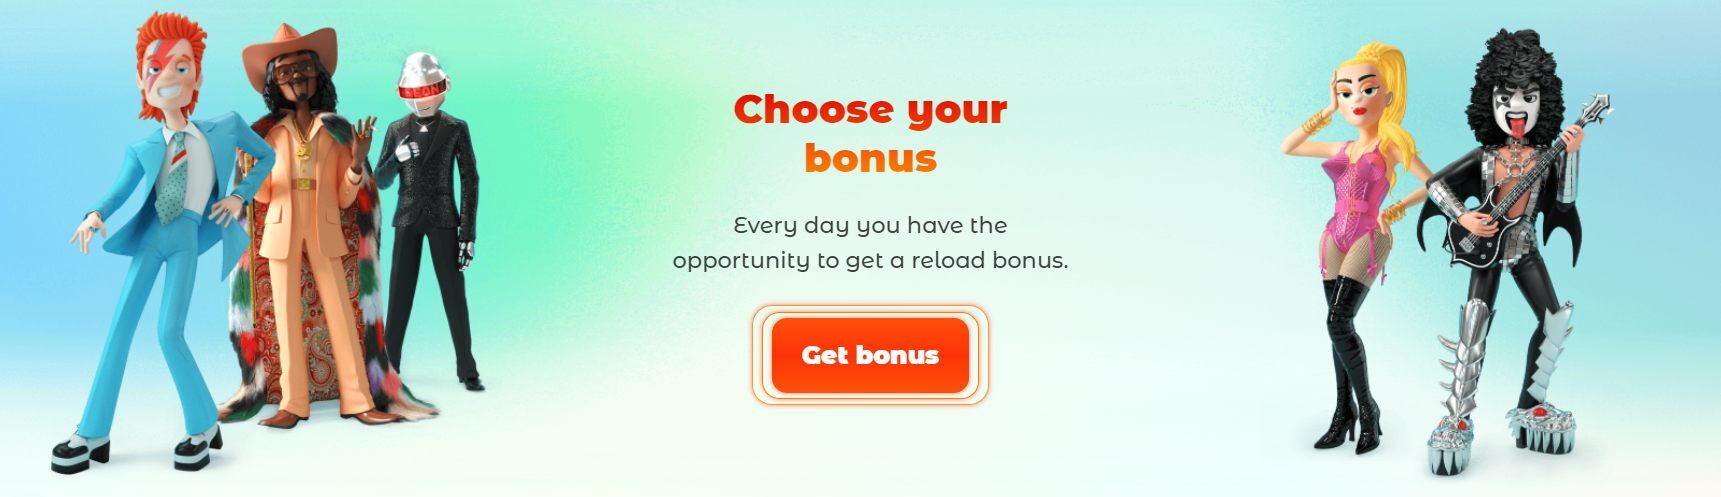 Choose Your Bonus Neon 54 Casino